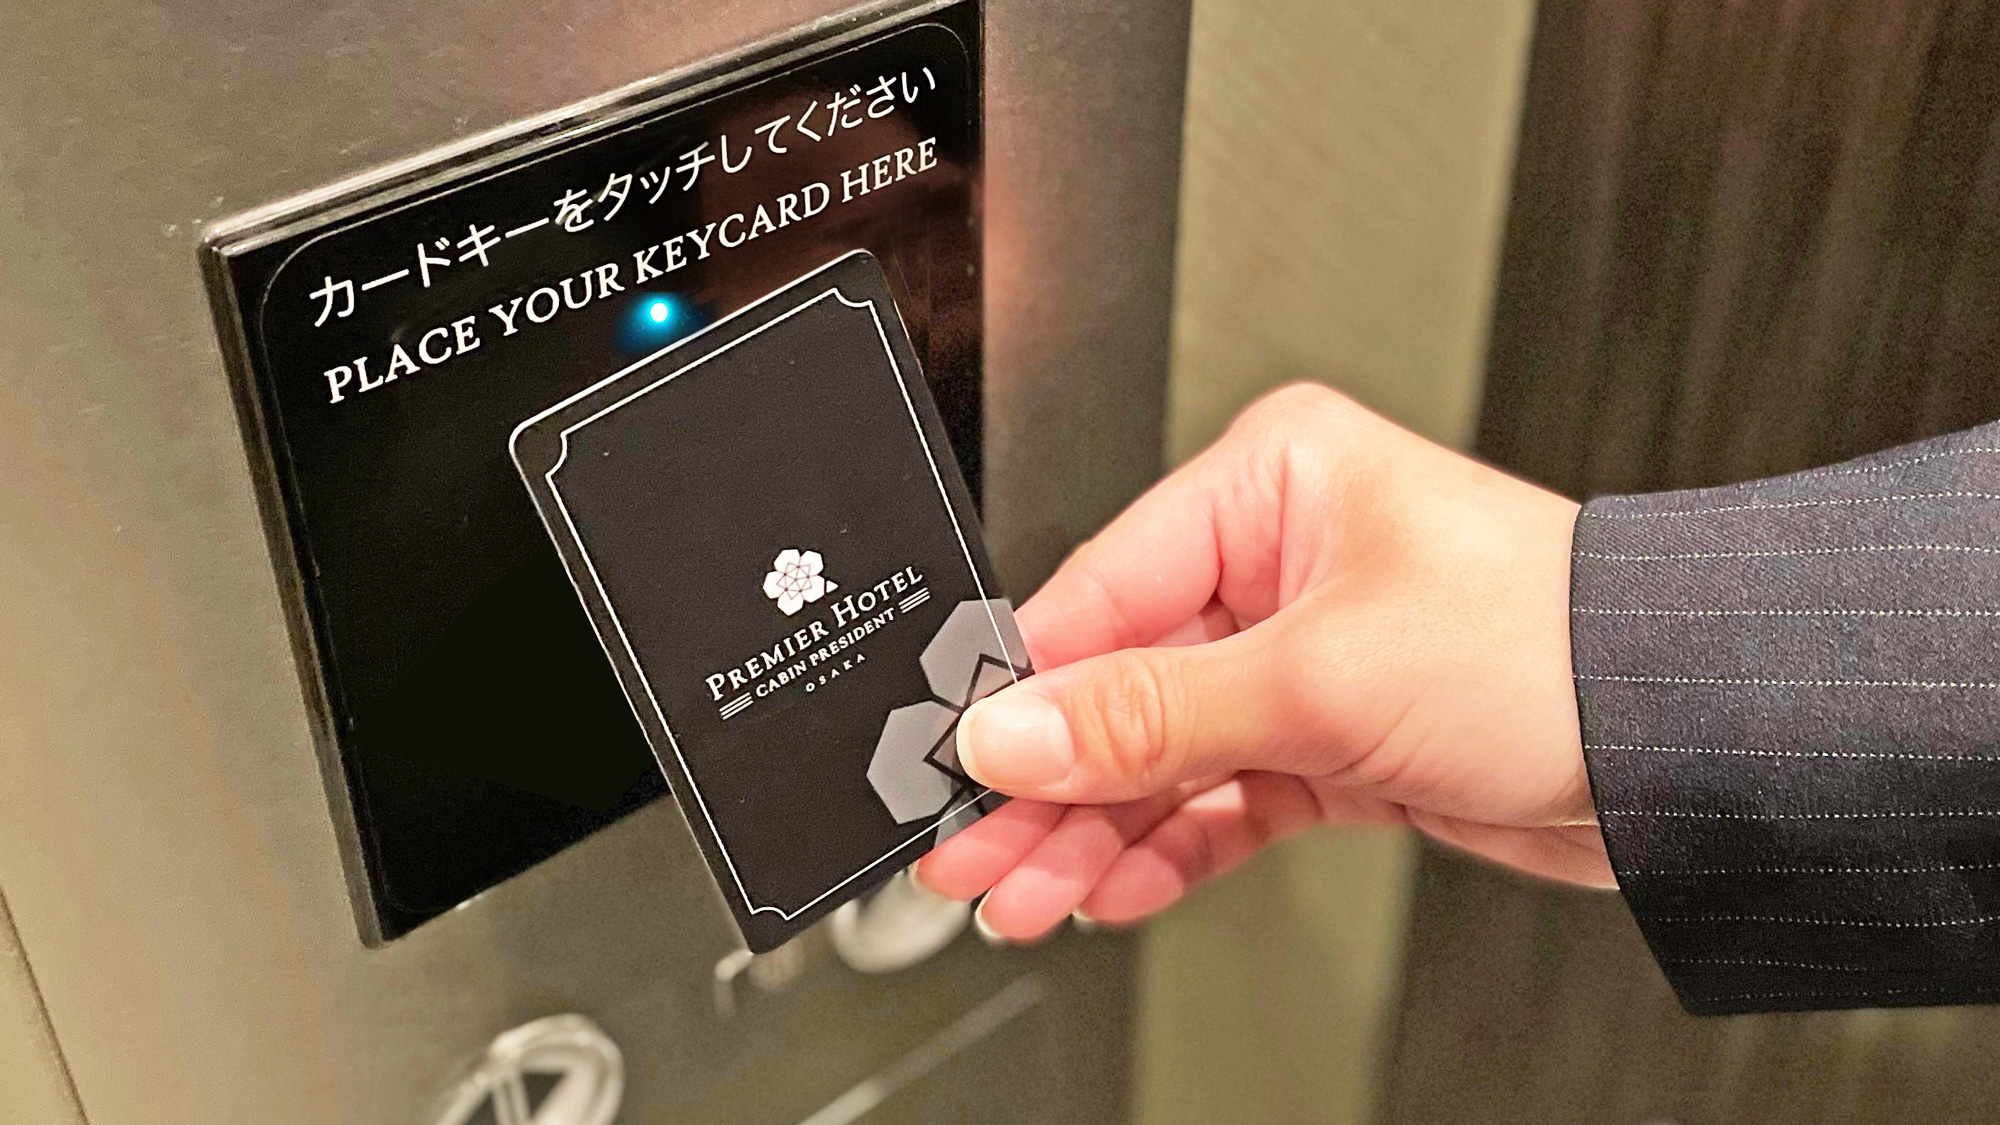 エレベーターは防犯面に配慮し、ルームキーをタッチして階数ボタンを押すセキュリティセンサーを採用